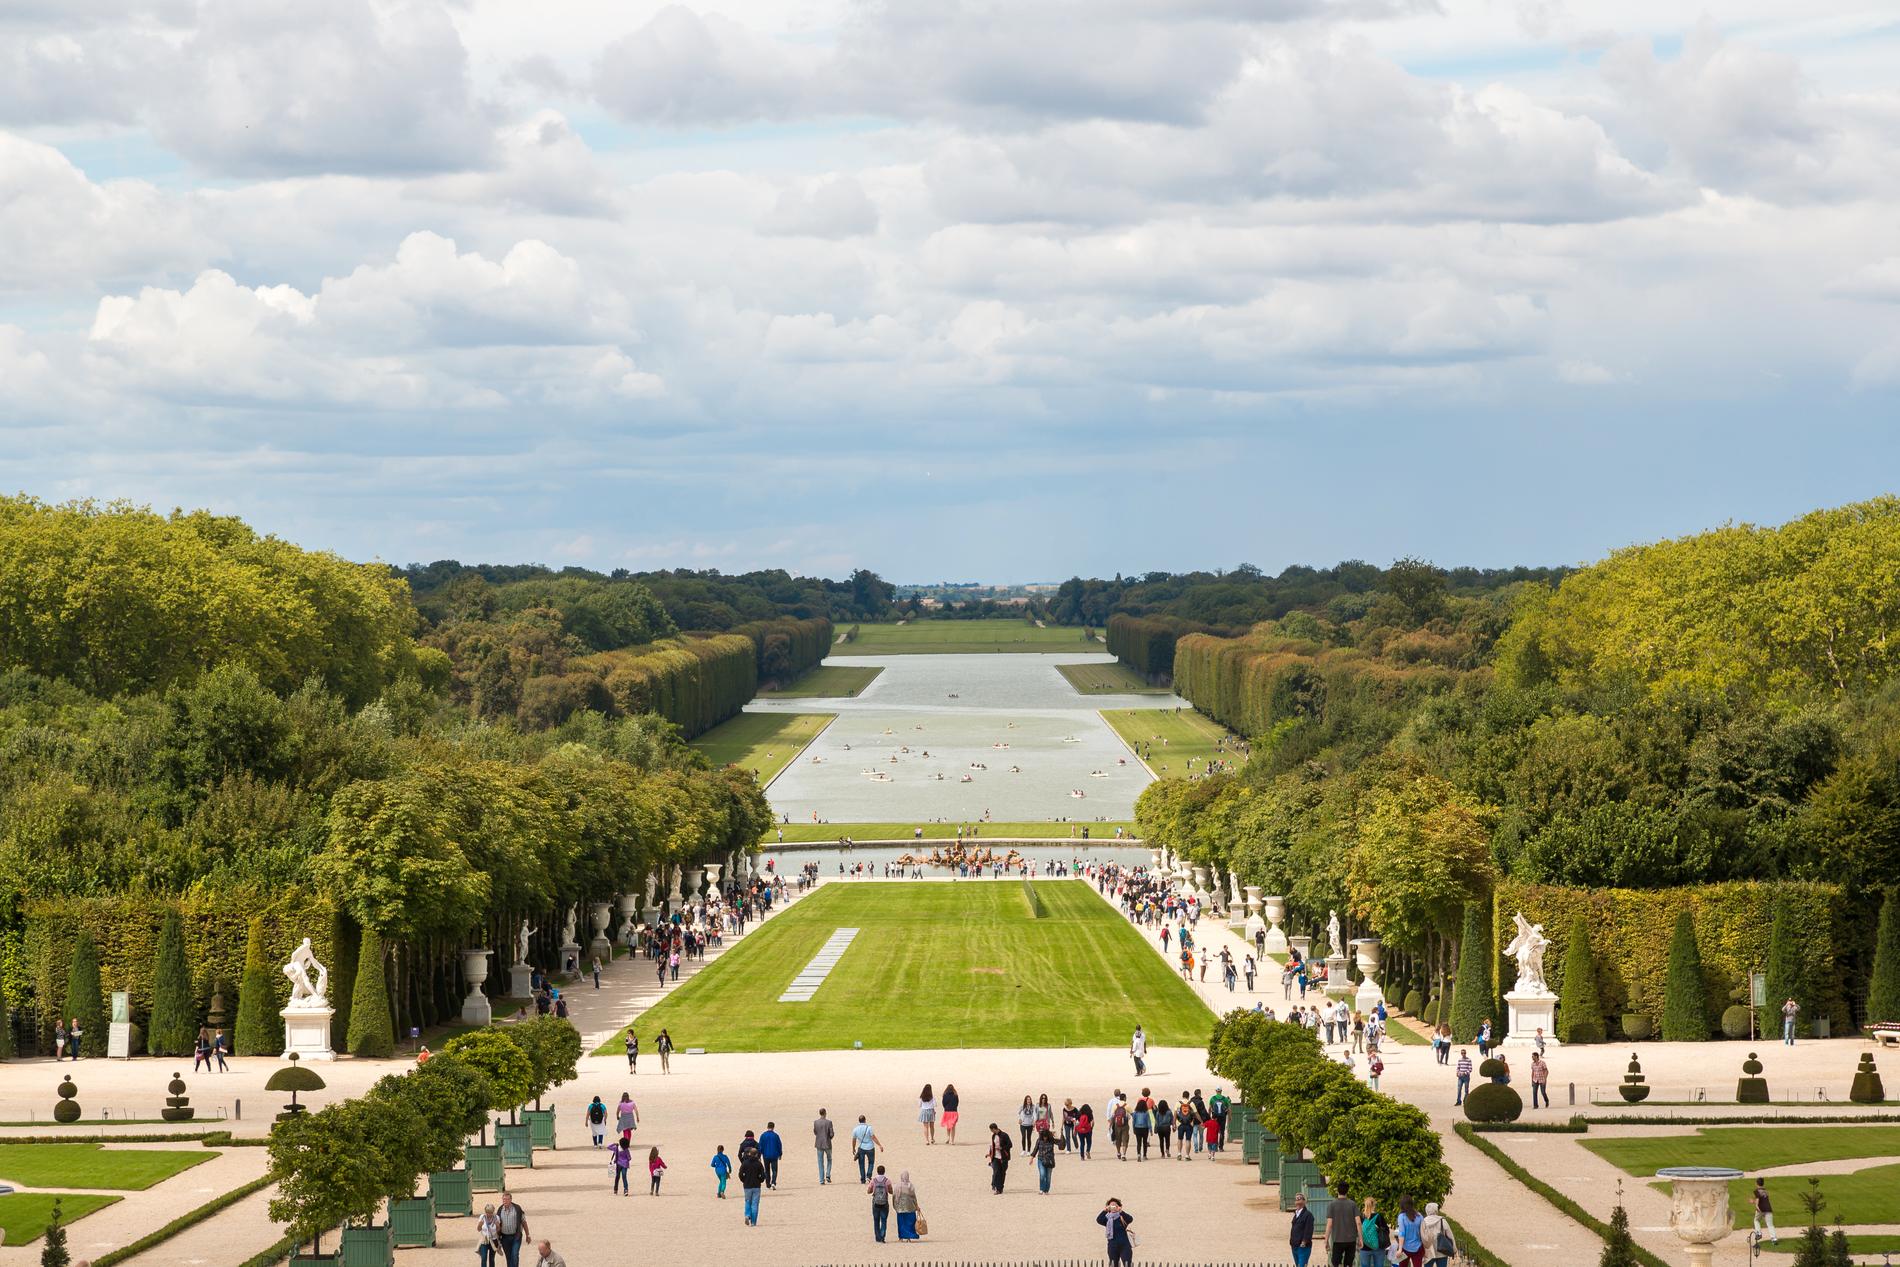 Versailles slottsträdgård lockar lika mycket som slottets vackra rum och salar. 